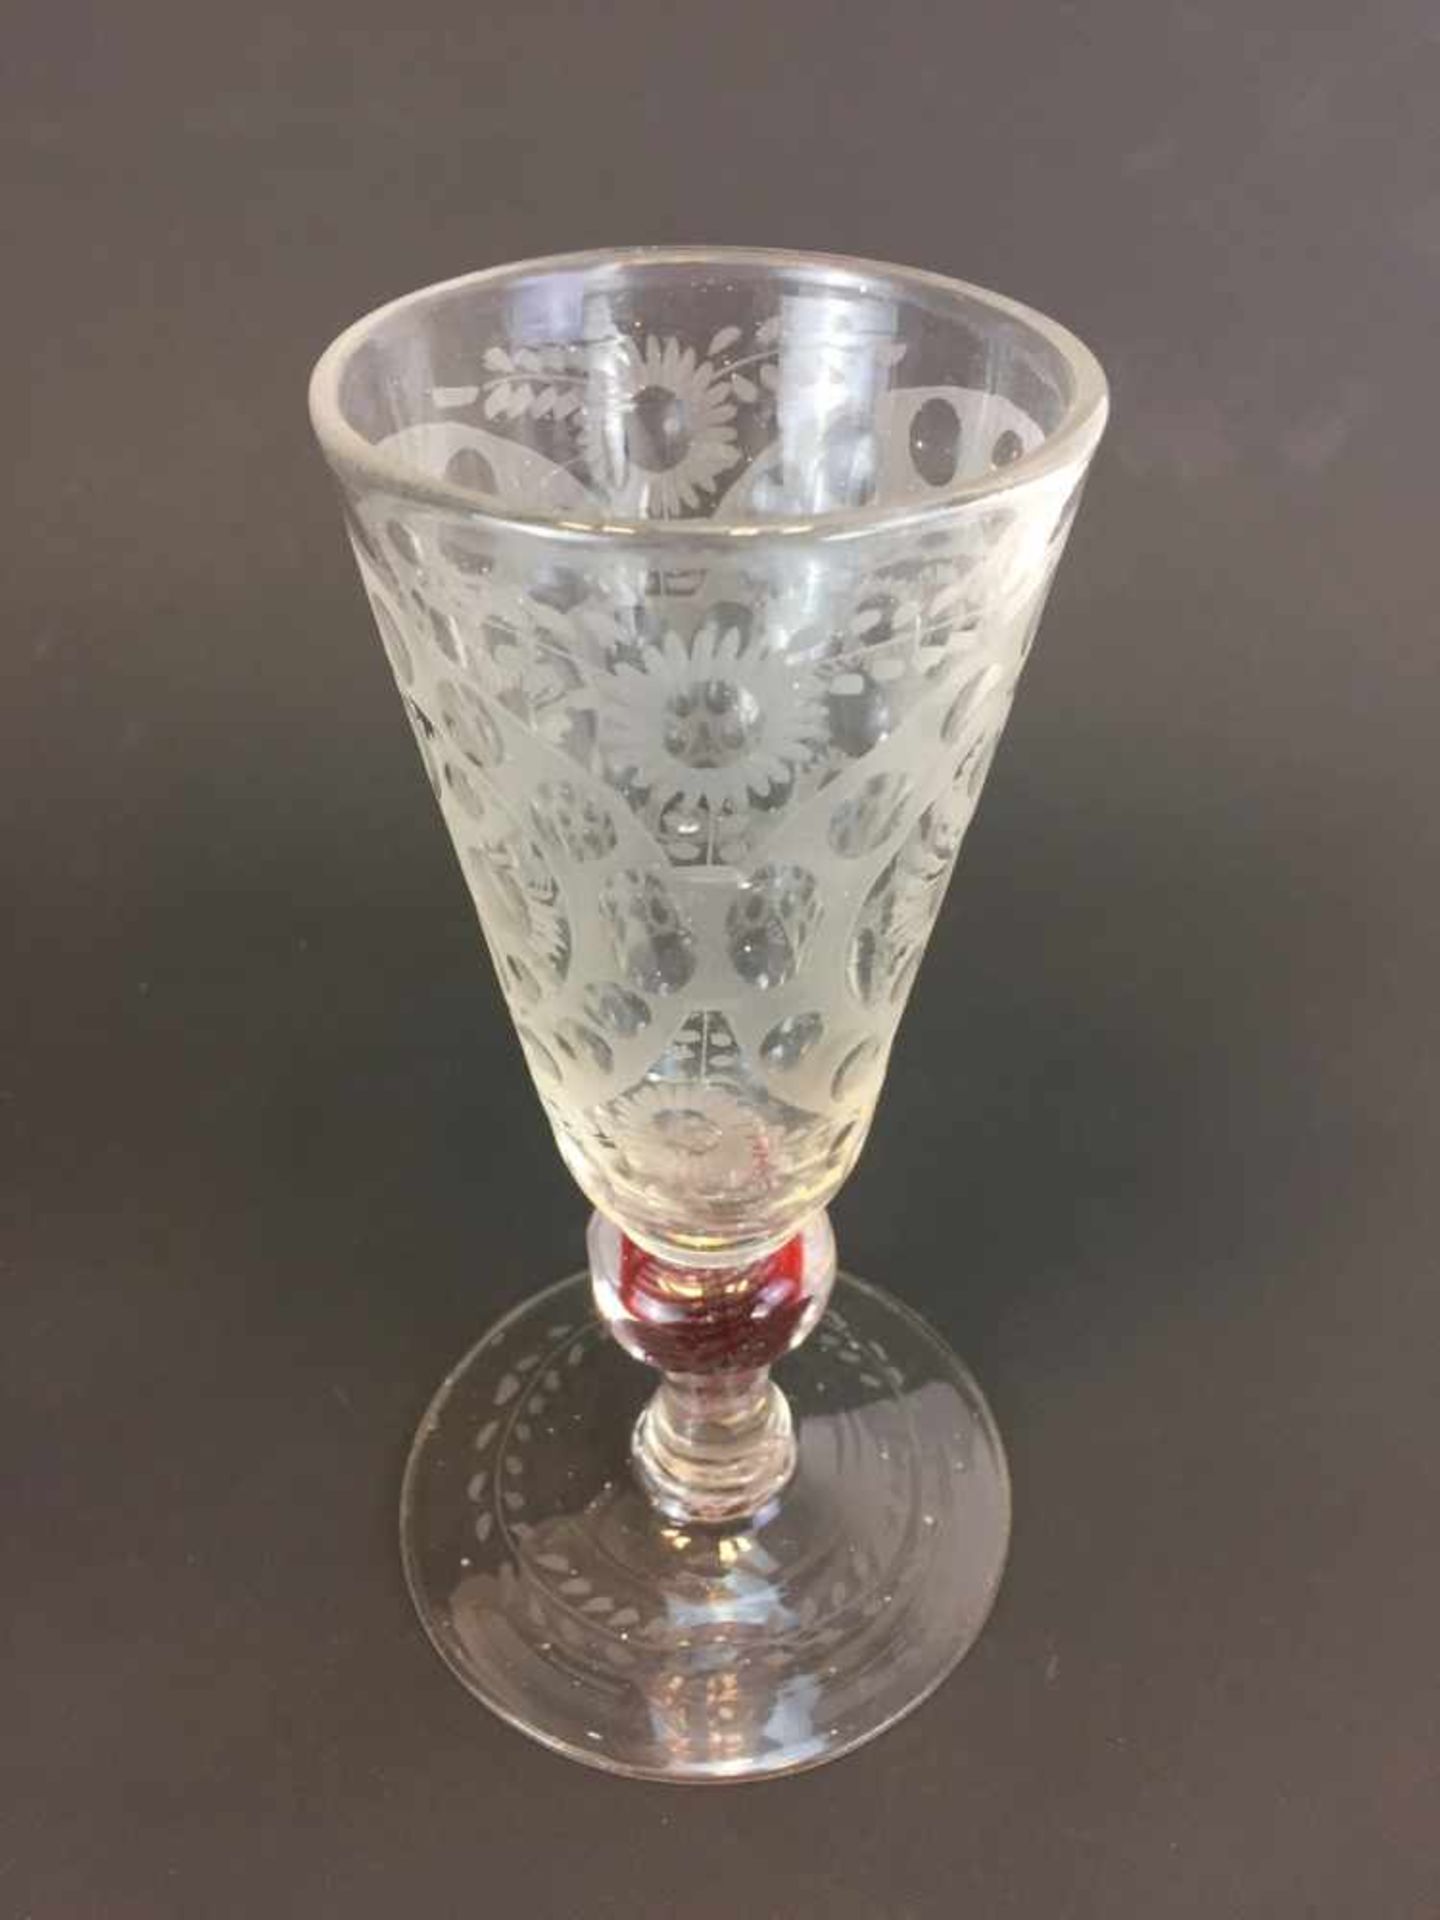 Hochbedeutender Barock-Pokal: Glas beschliffen, Goldrubin-Fäden. Böhmen um 1700.Farbloses Glas von - Image 3 of 5